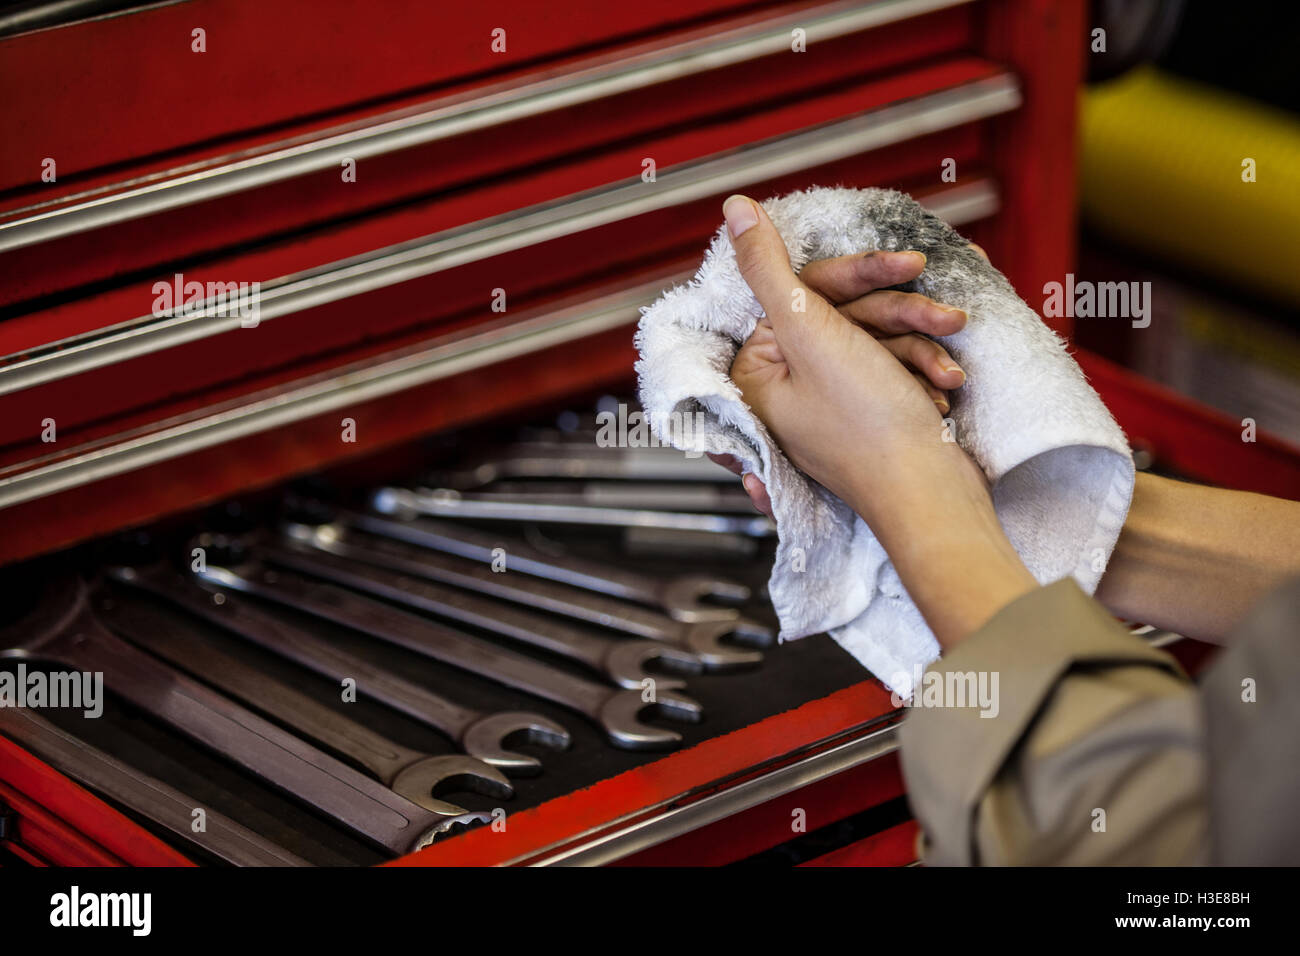 Mechanic wiping her hand with handkerchief Stock Photo